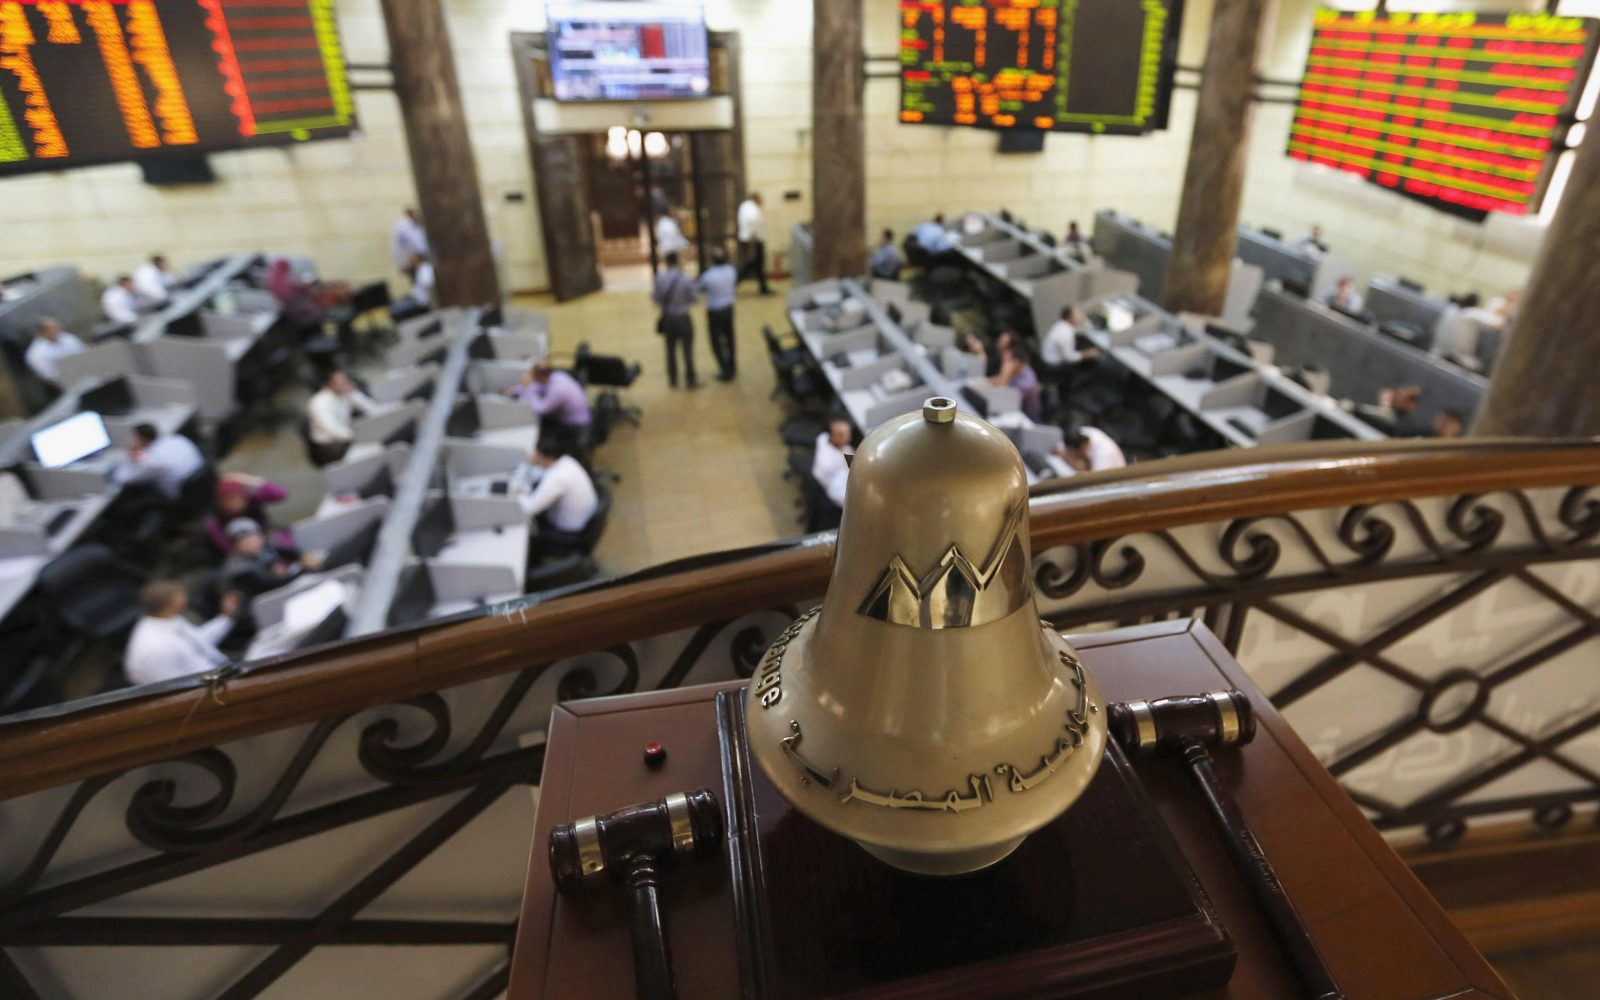 أنشط 10 شركات بالبورصة المصرية خلال مايو الماضي وتوقعات بزيادة أسهمها